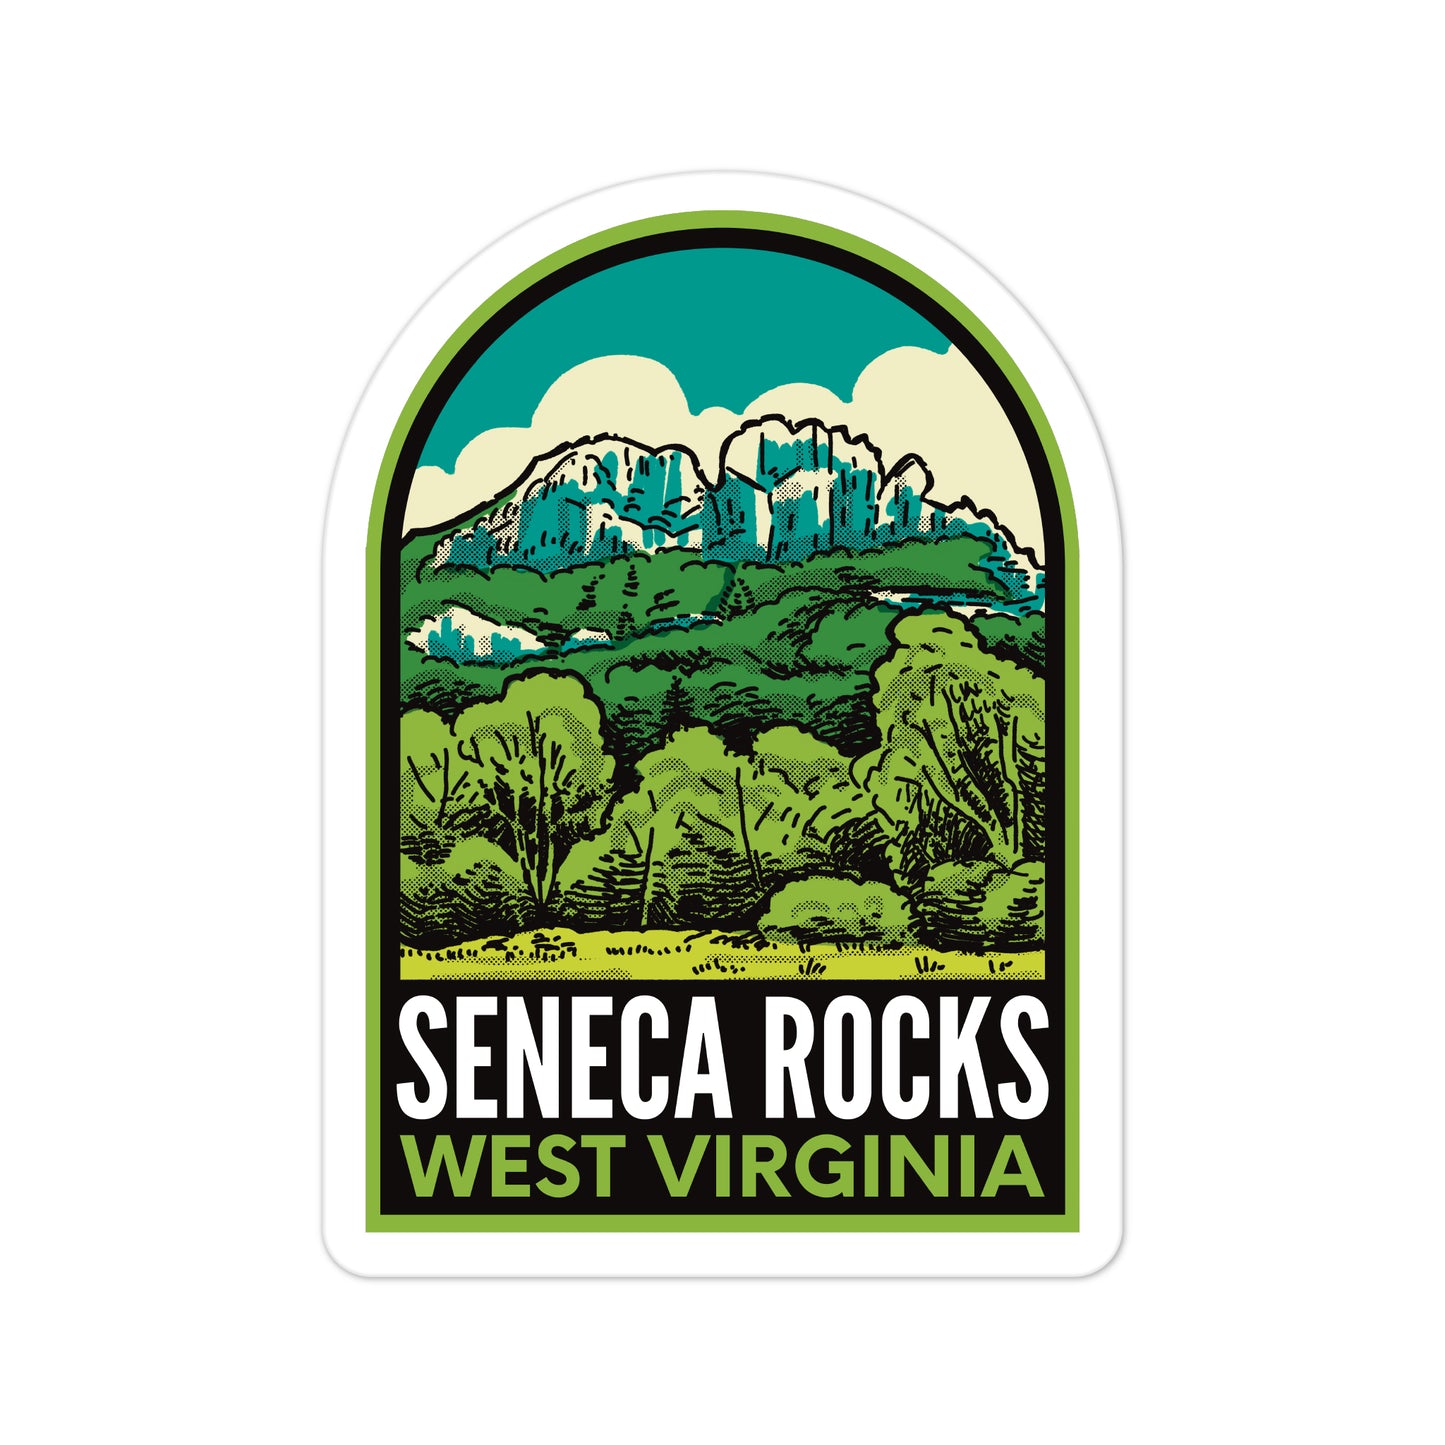 A sticker of Seneca Rocks West Virginia